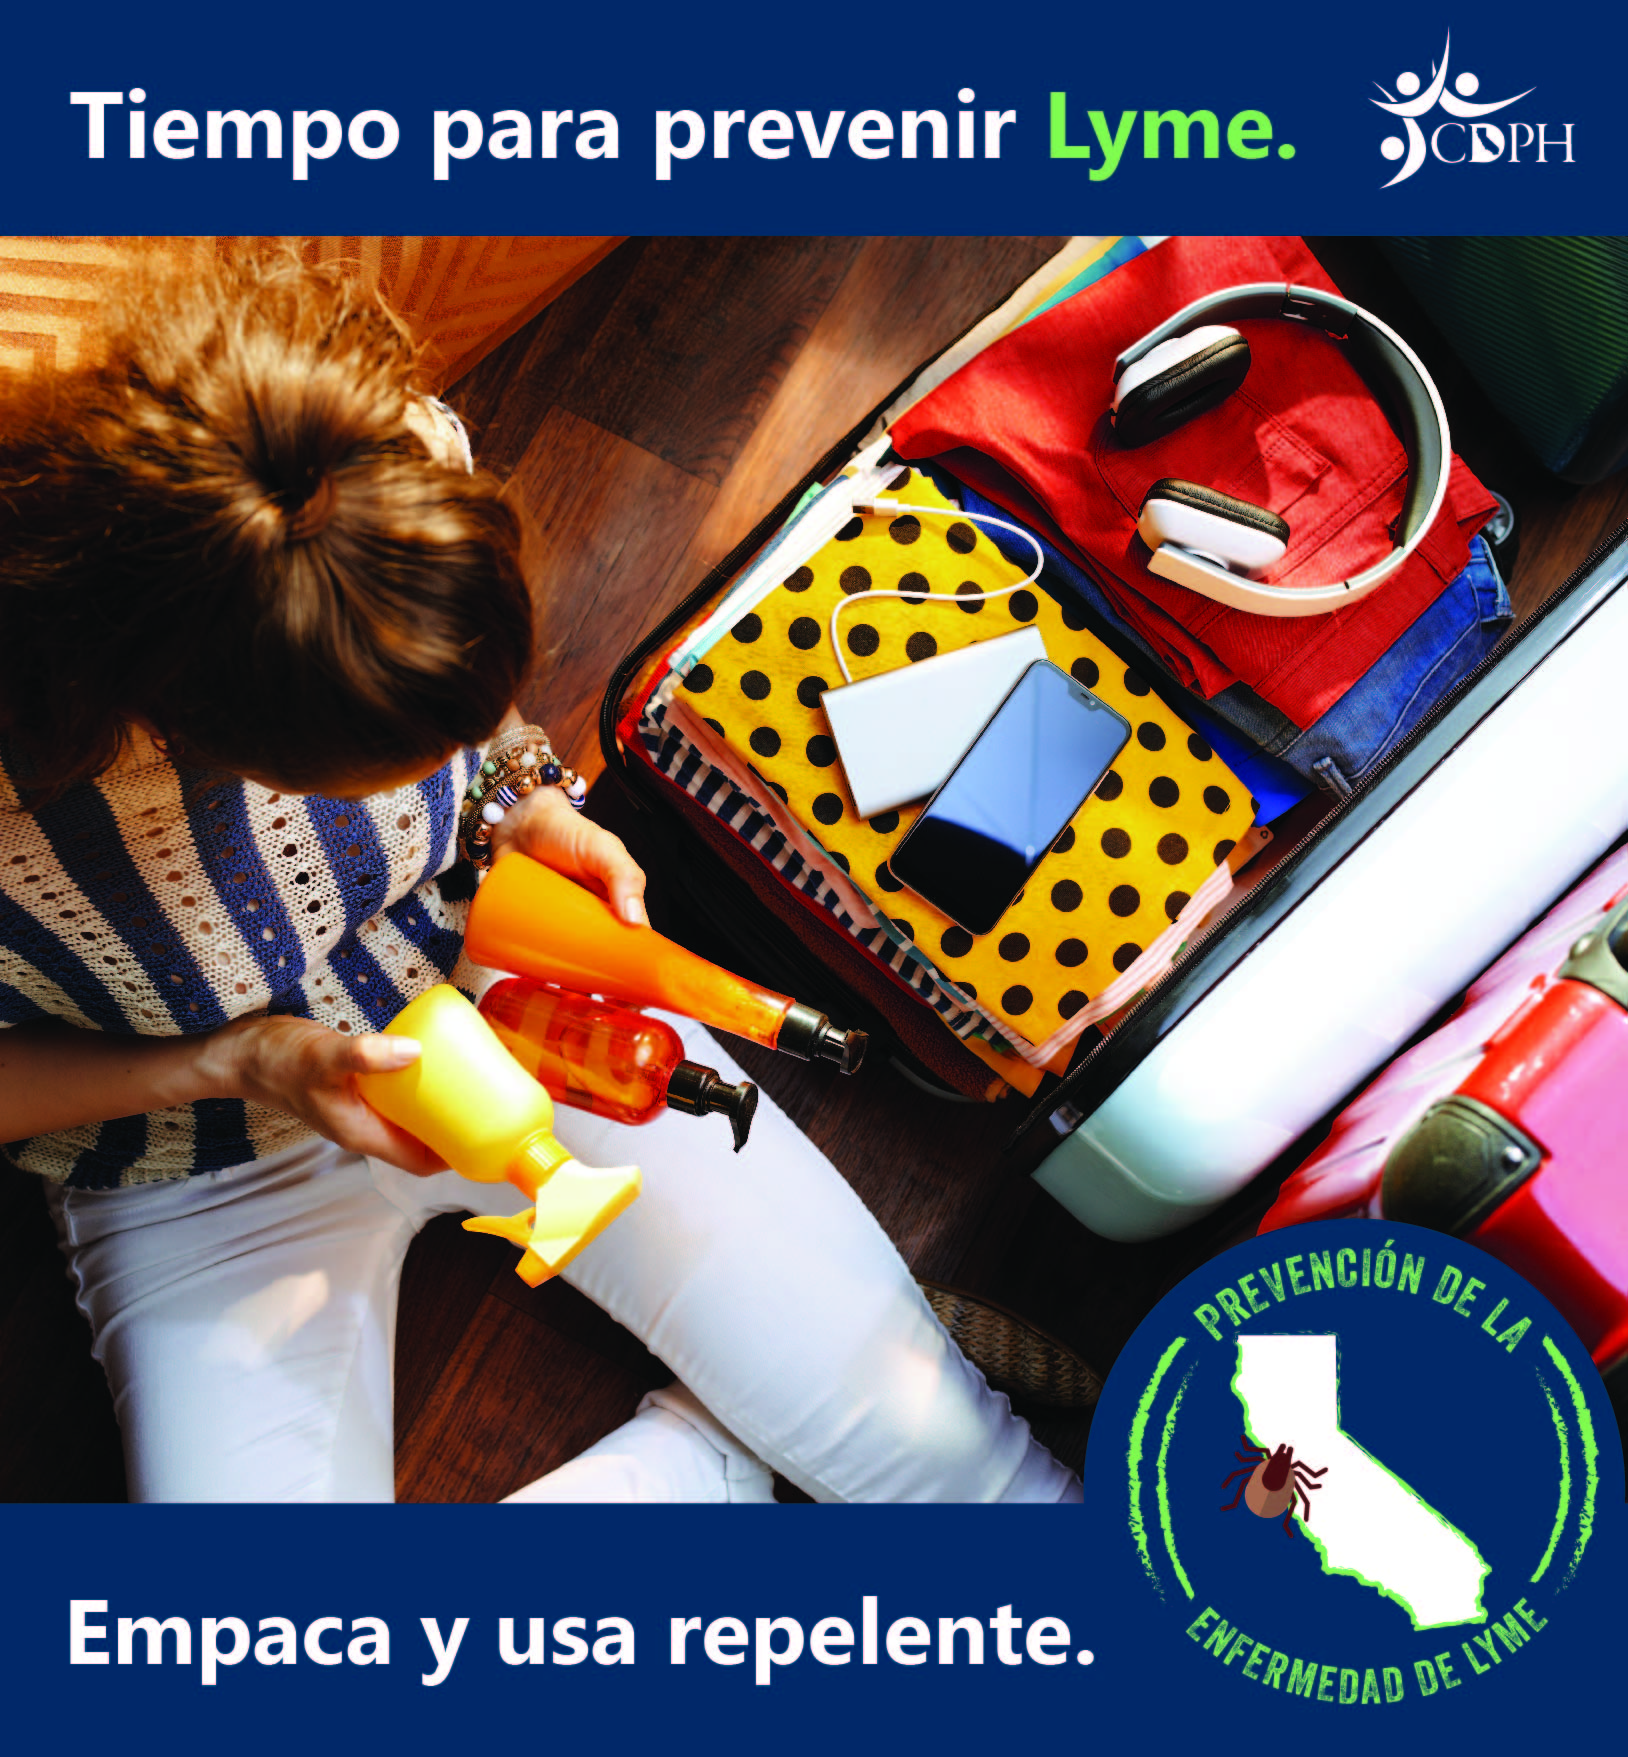 Tiempo para prevenir Lyme. Empaca y usa repelente.